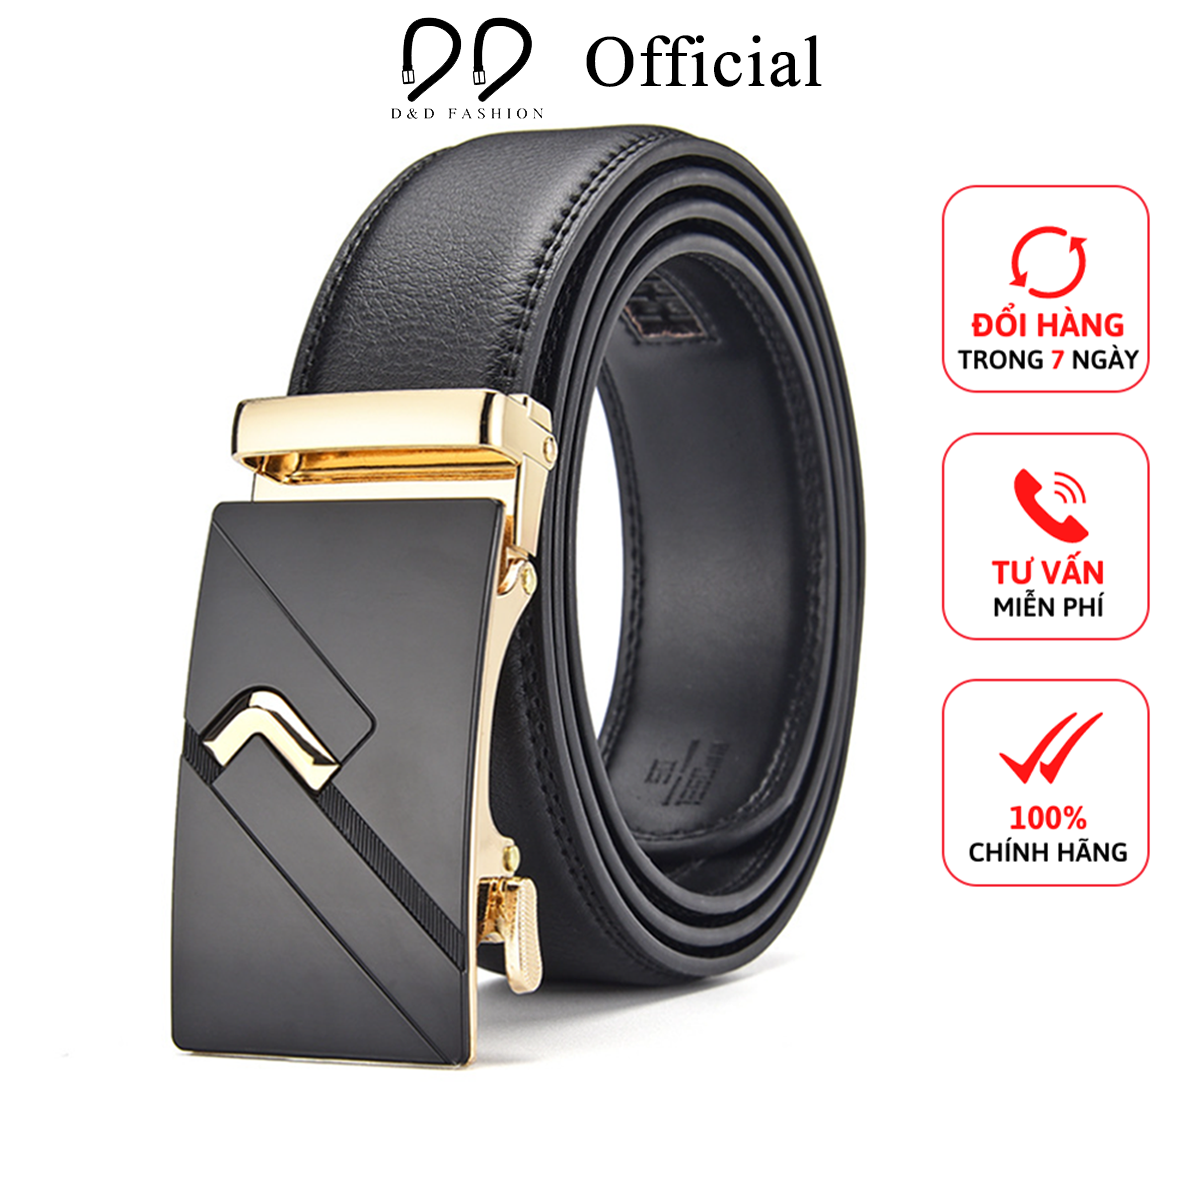 Thắt lưng nam da cao cấp chữ V, khóa kim loại kiểu tự động (Mã DDF05) - D&D Fashion